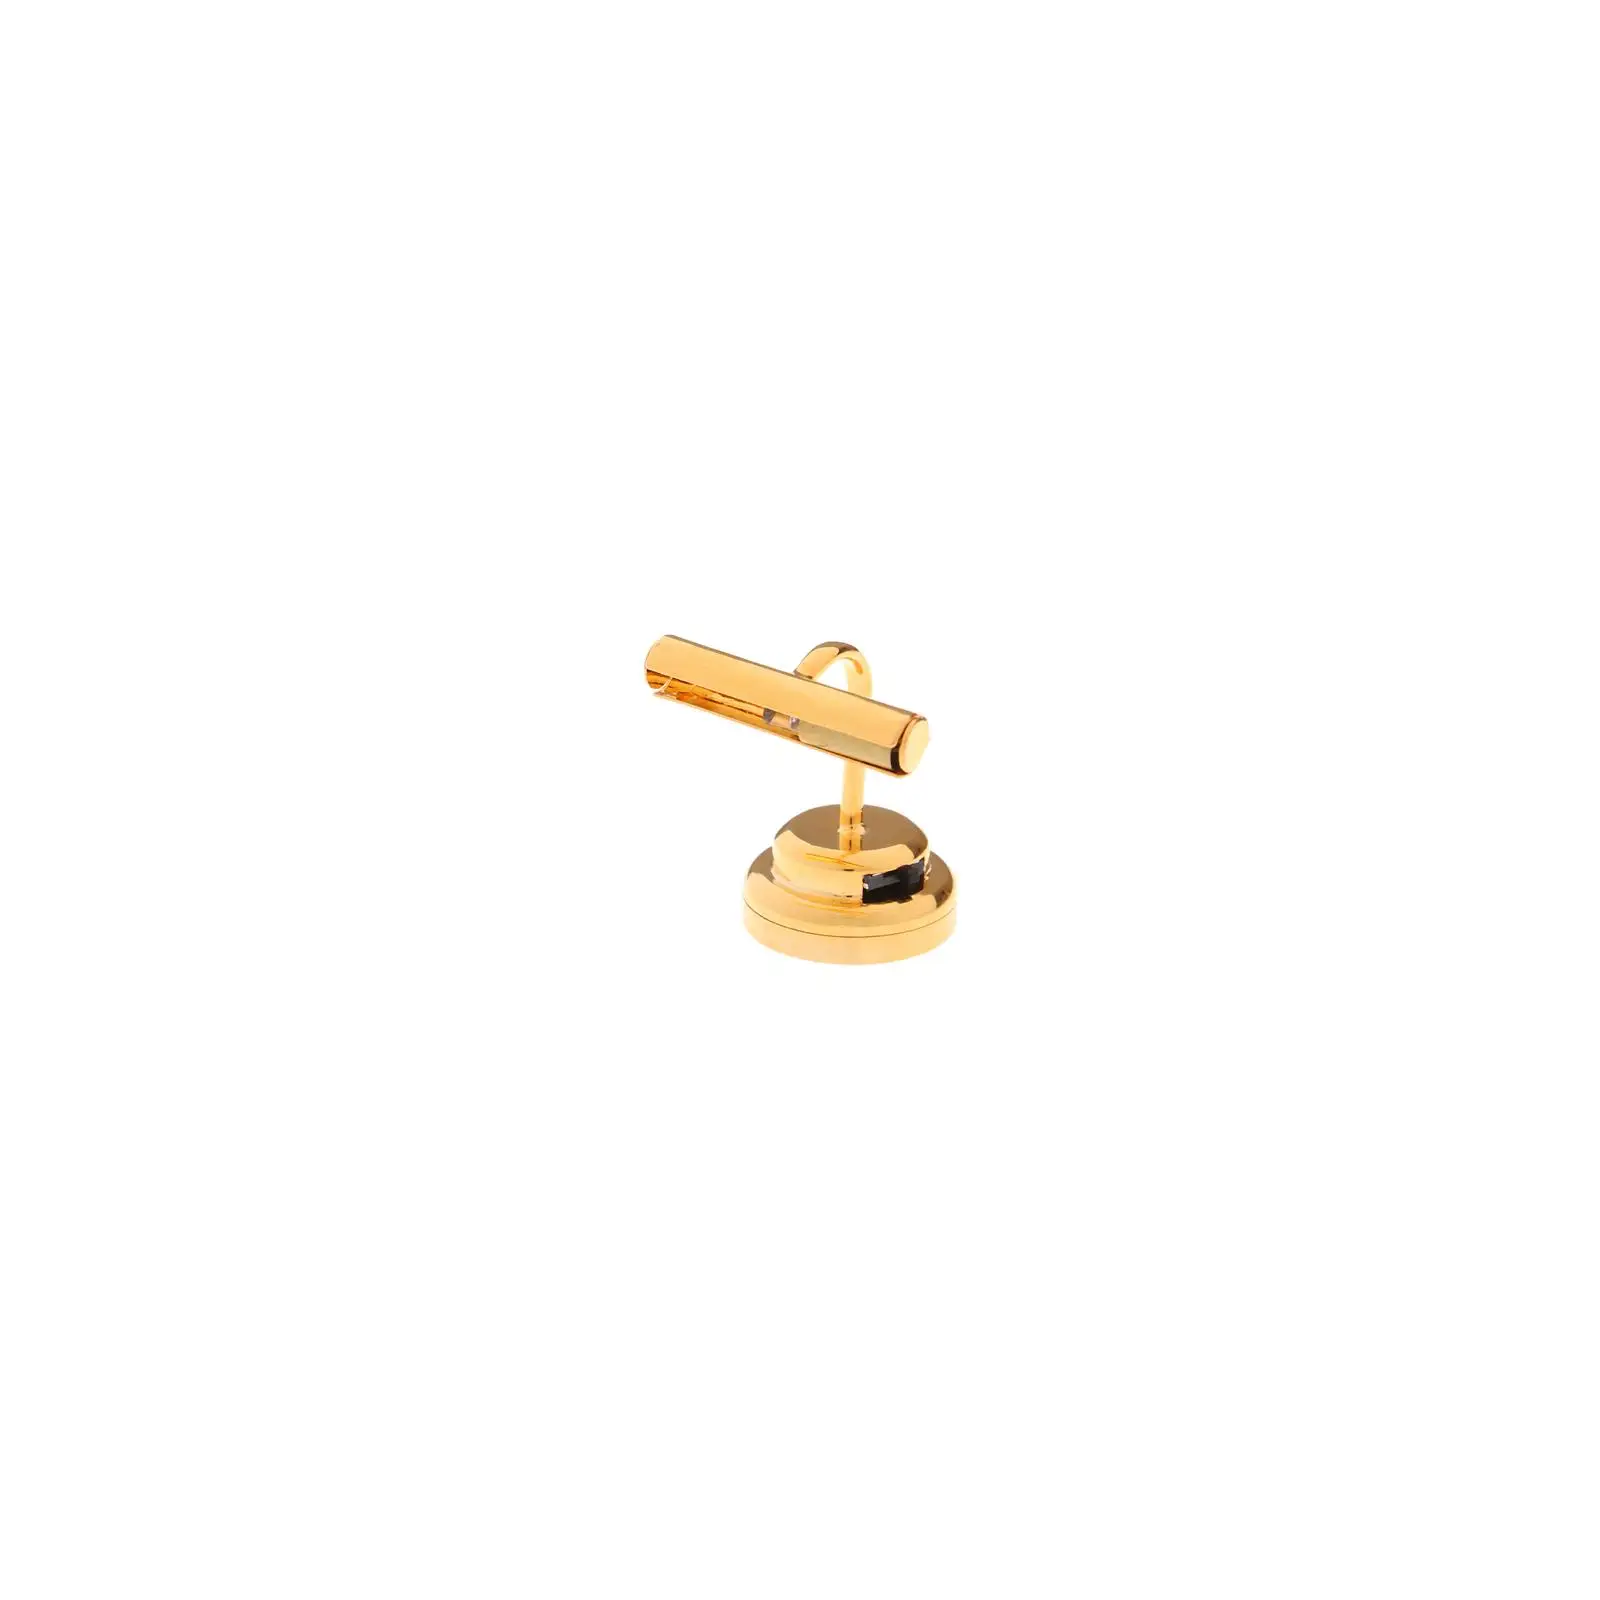 Настенный светильник для Кукольного домика 1: 12, Миниатюрный, золотистого цвета, для имитации игрушки